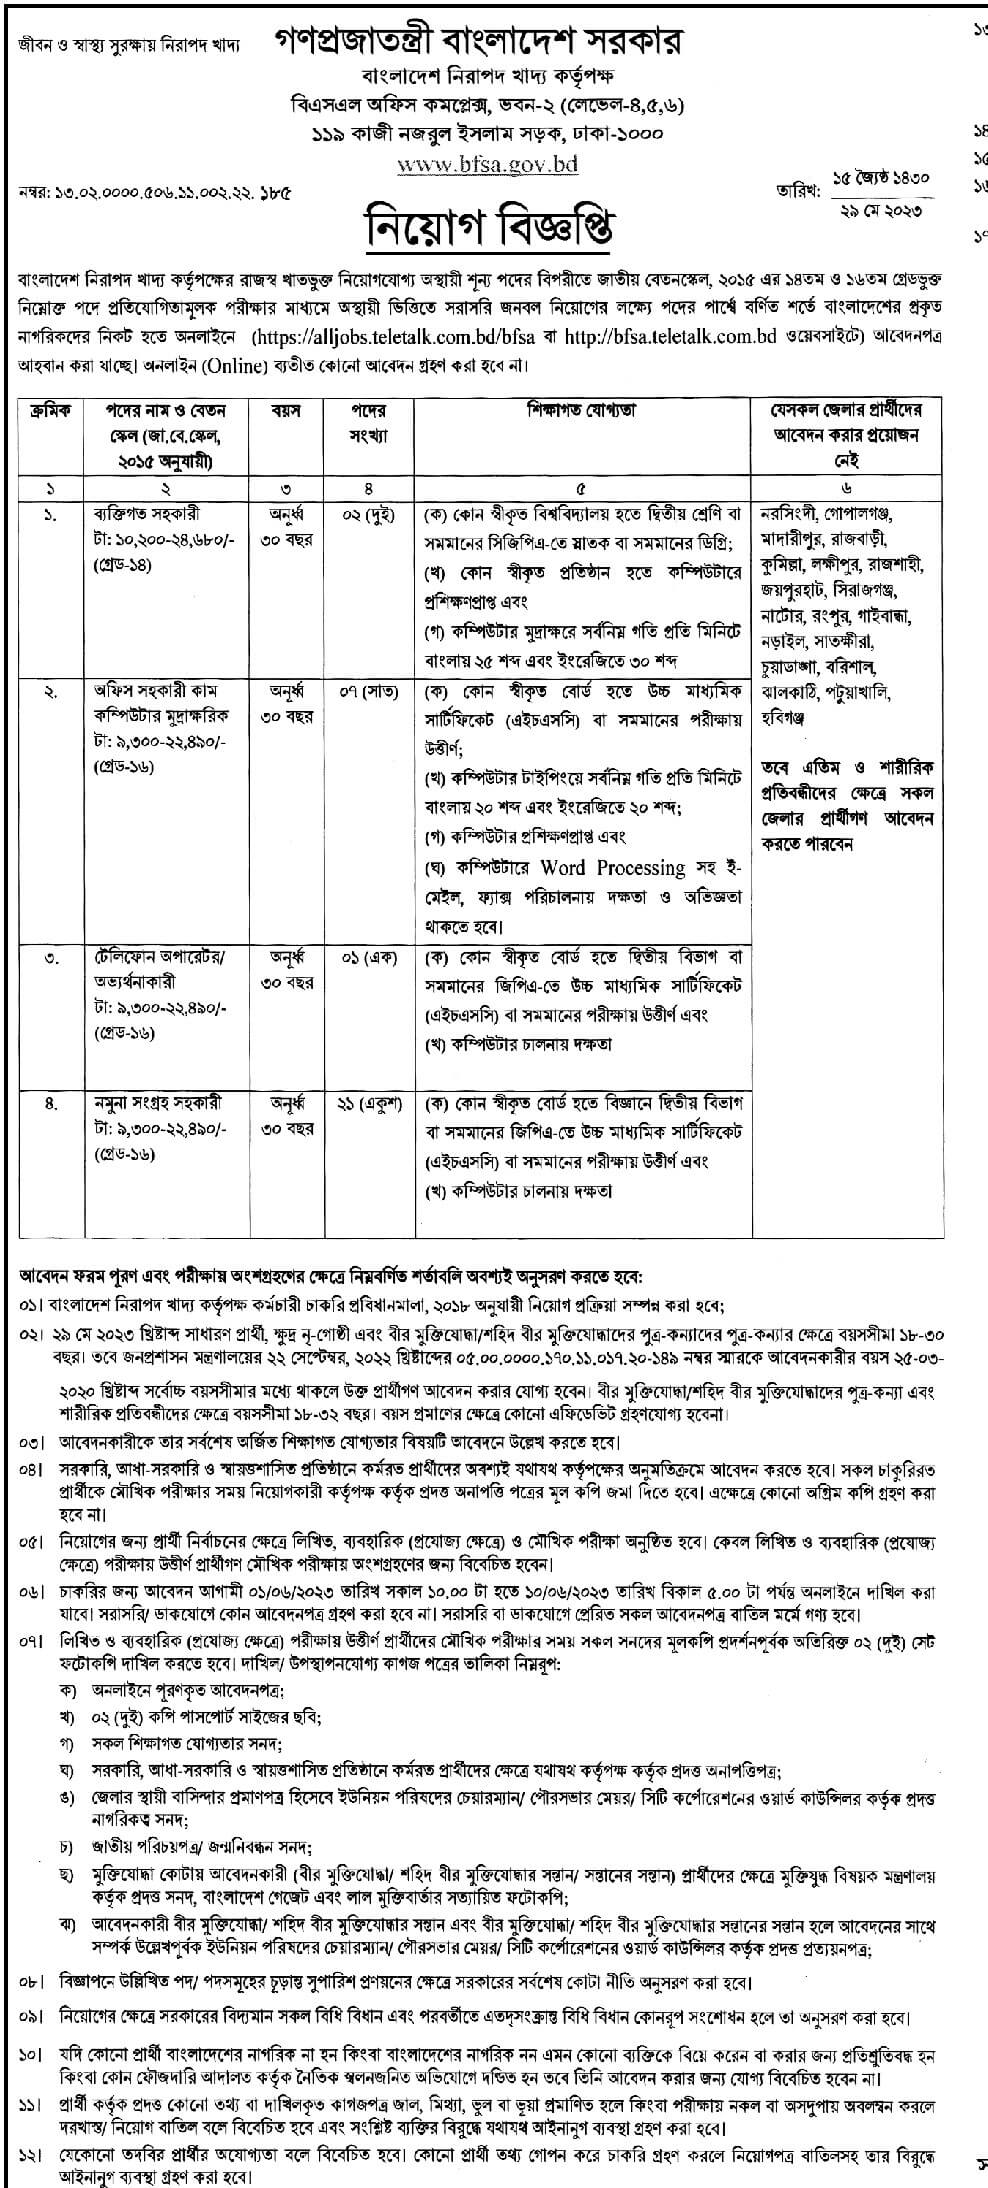 বাংলাদেশ নিরাপদ খাদ্য কর্তৃপক্ষ নিয়োগ বিজ্ঞপ্তি ২০২৩ | Bangladesh Safe Food Authority Recruitment Notification 2023